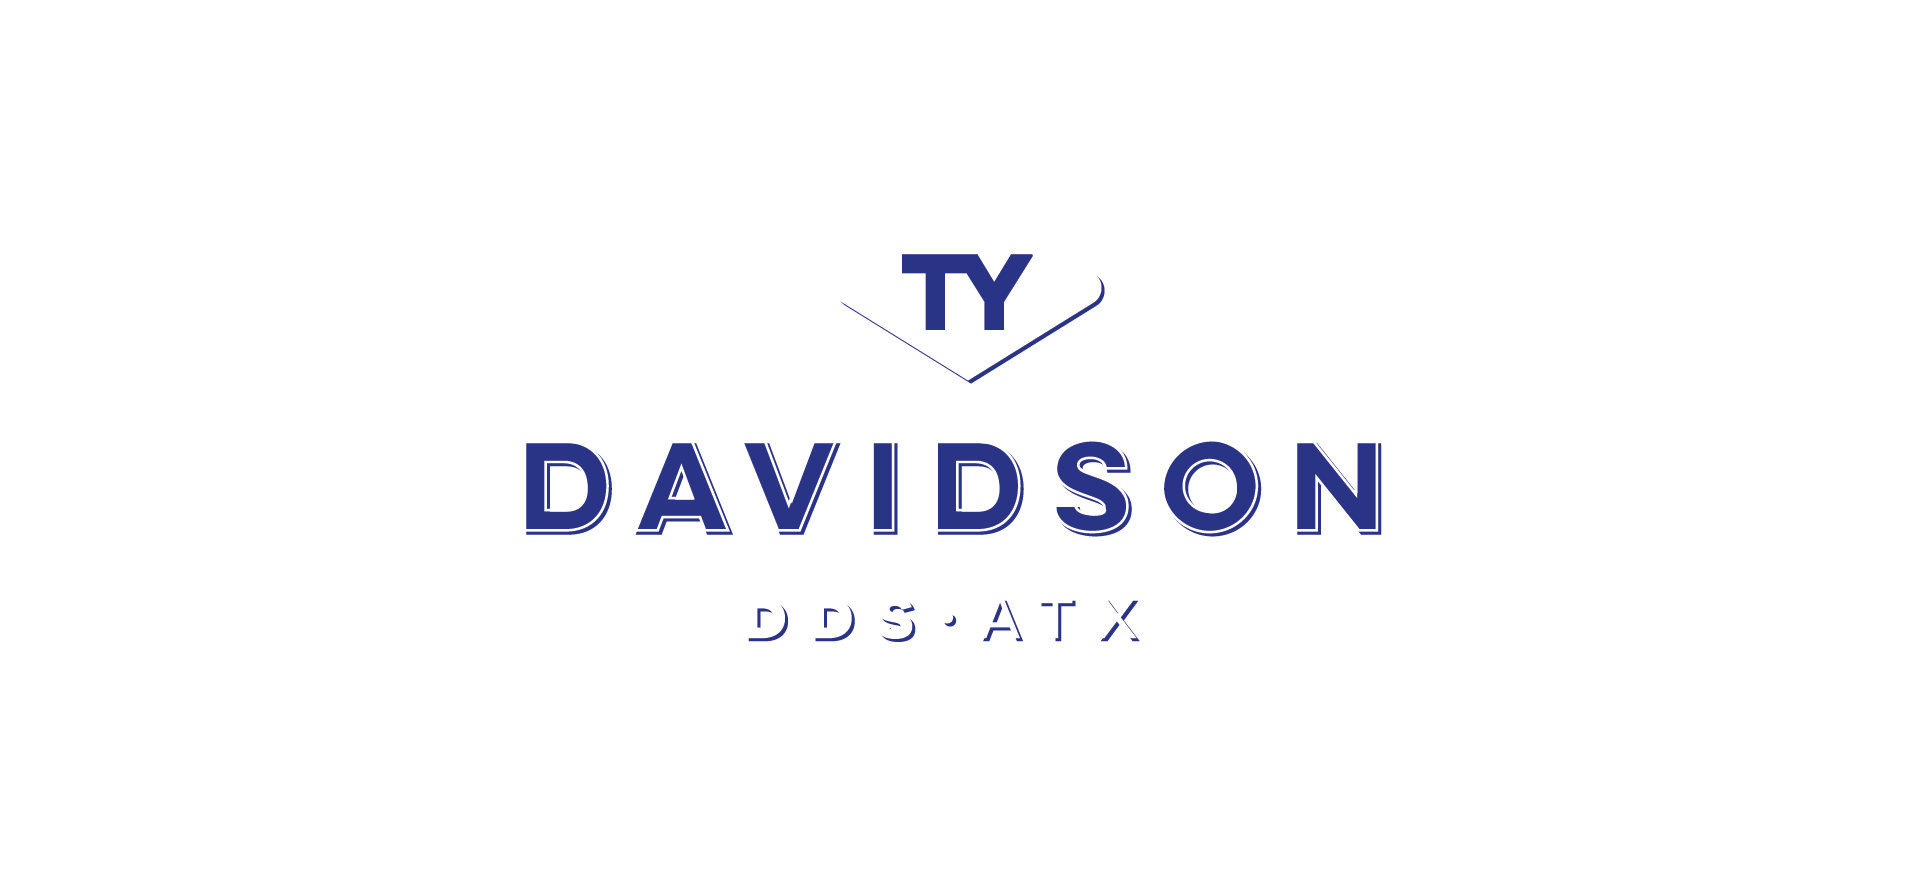 Ty Davidson DDS